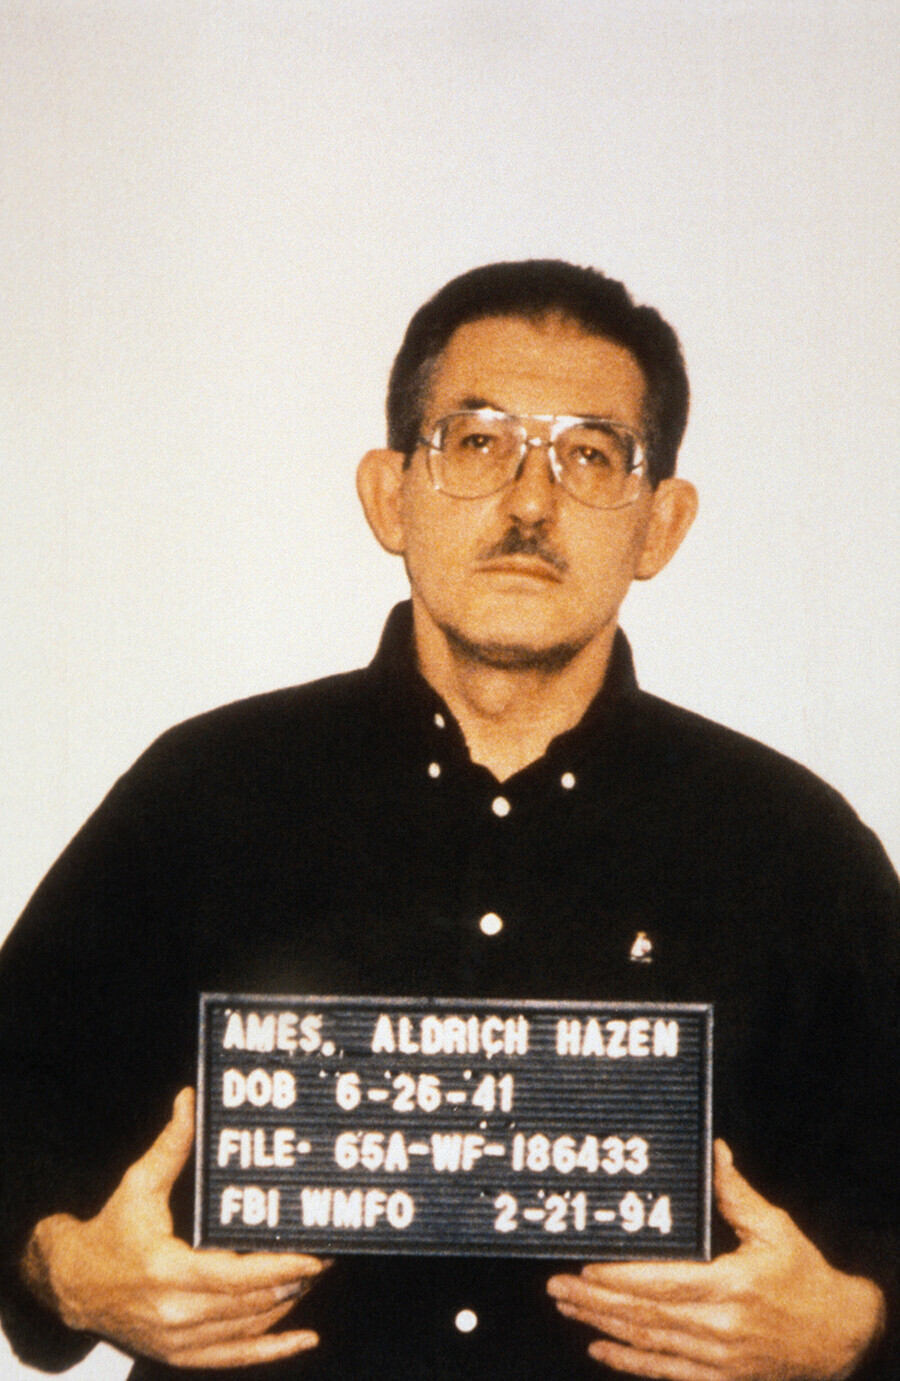 Aldrich Hazen Ames, ex-oficial da CIA condenado por espionagem.

